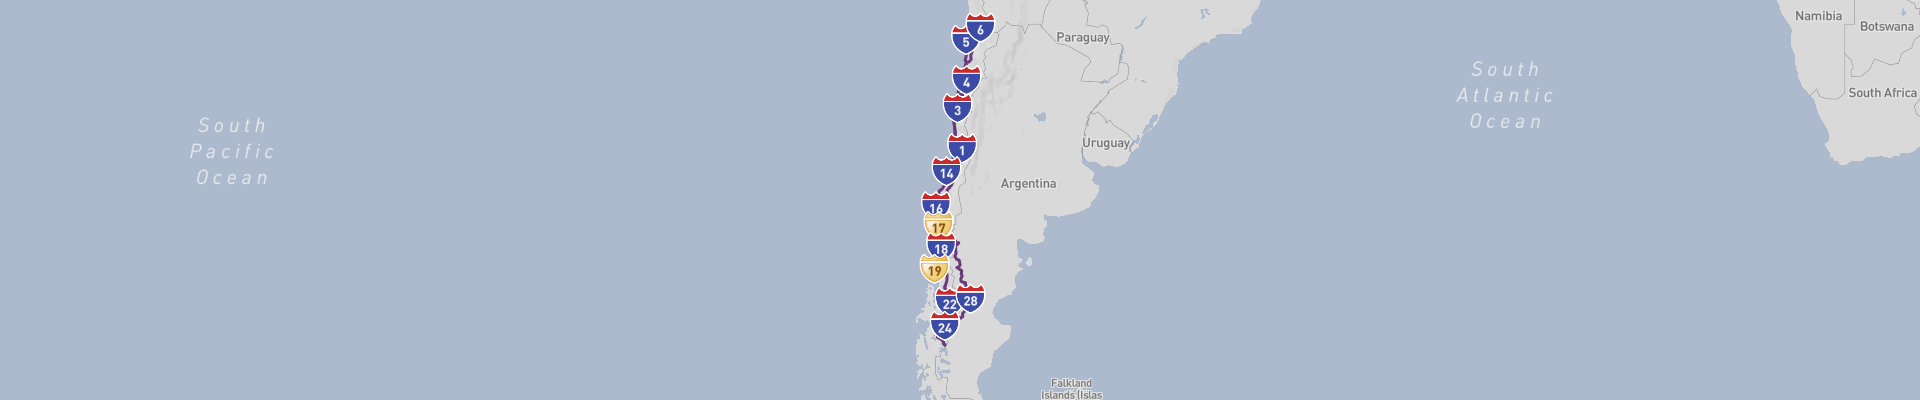 Itinéraire Chile 